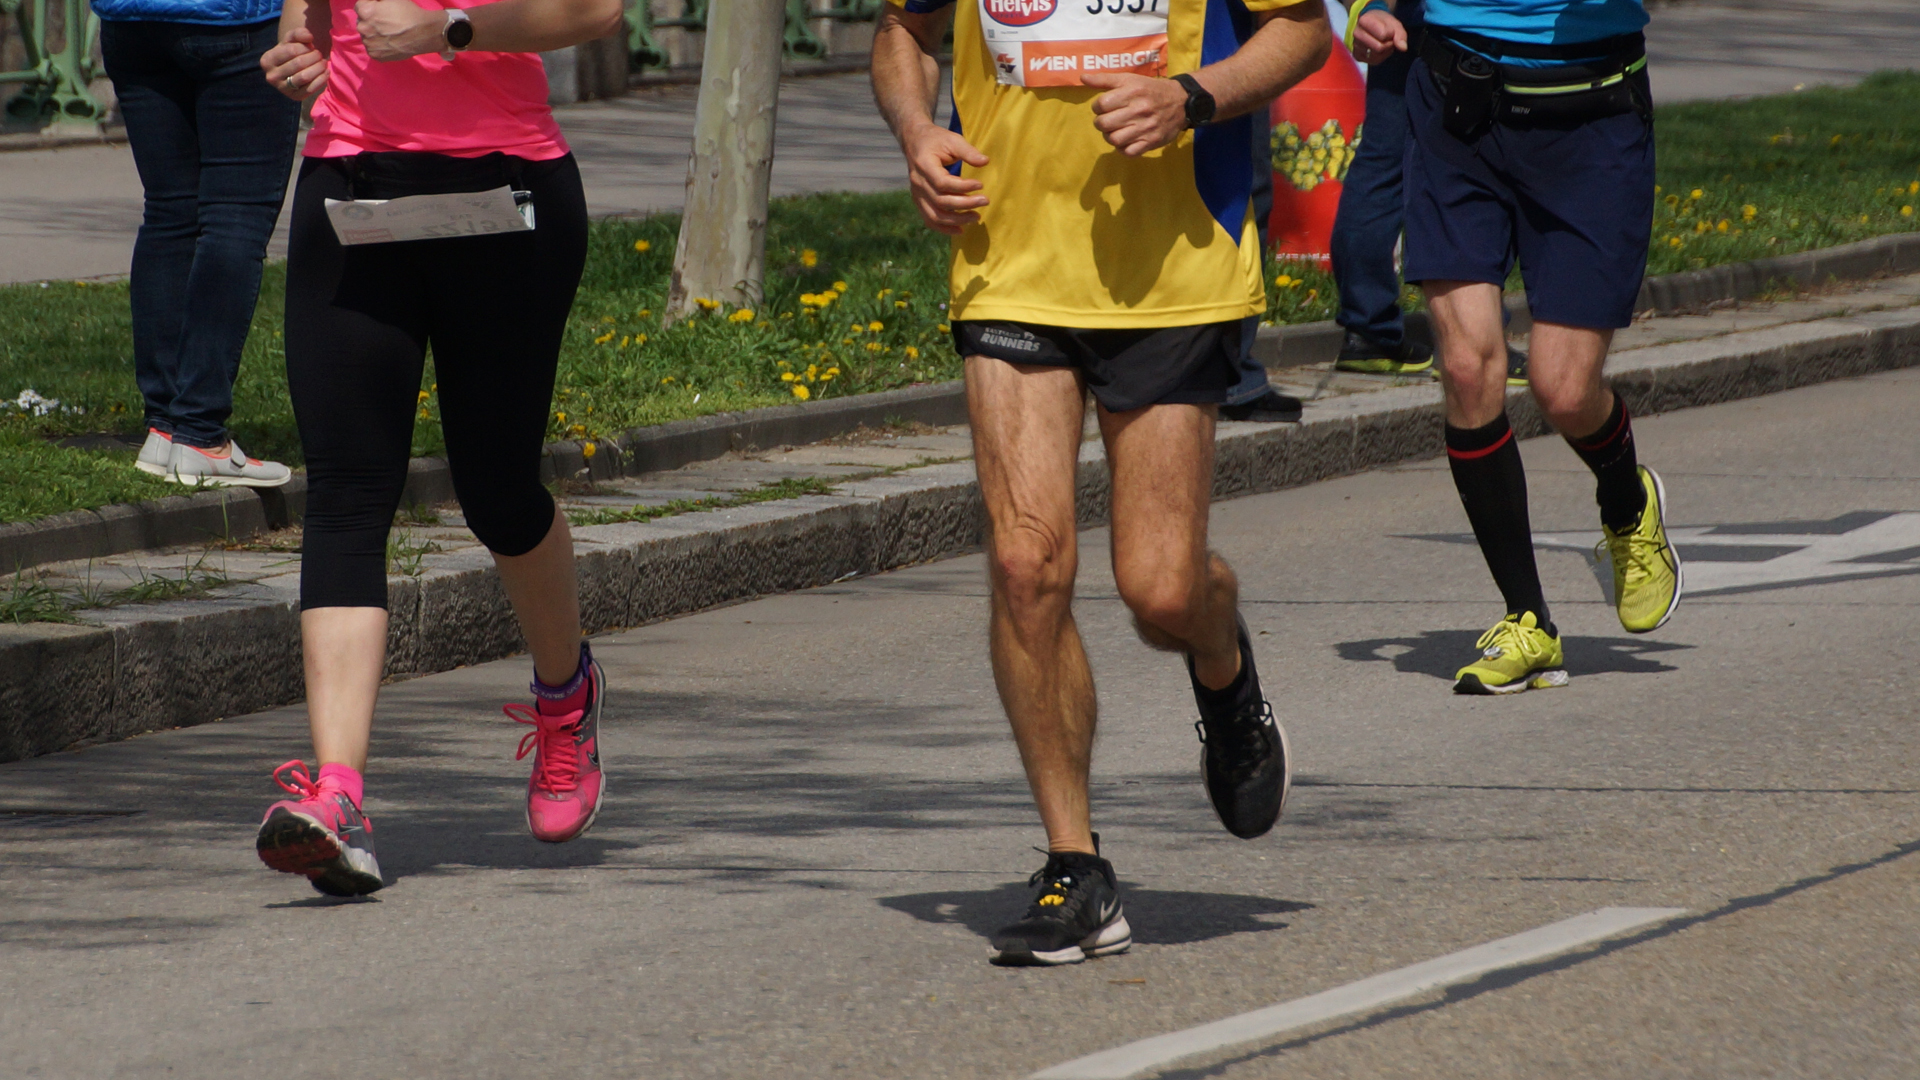 Zielgerade Covid-Marathon